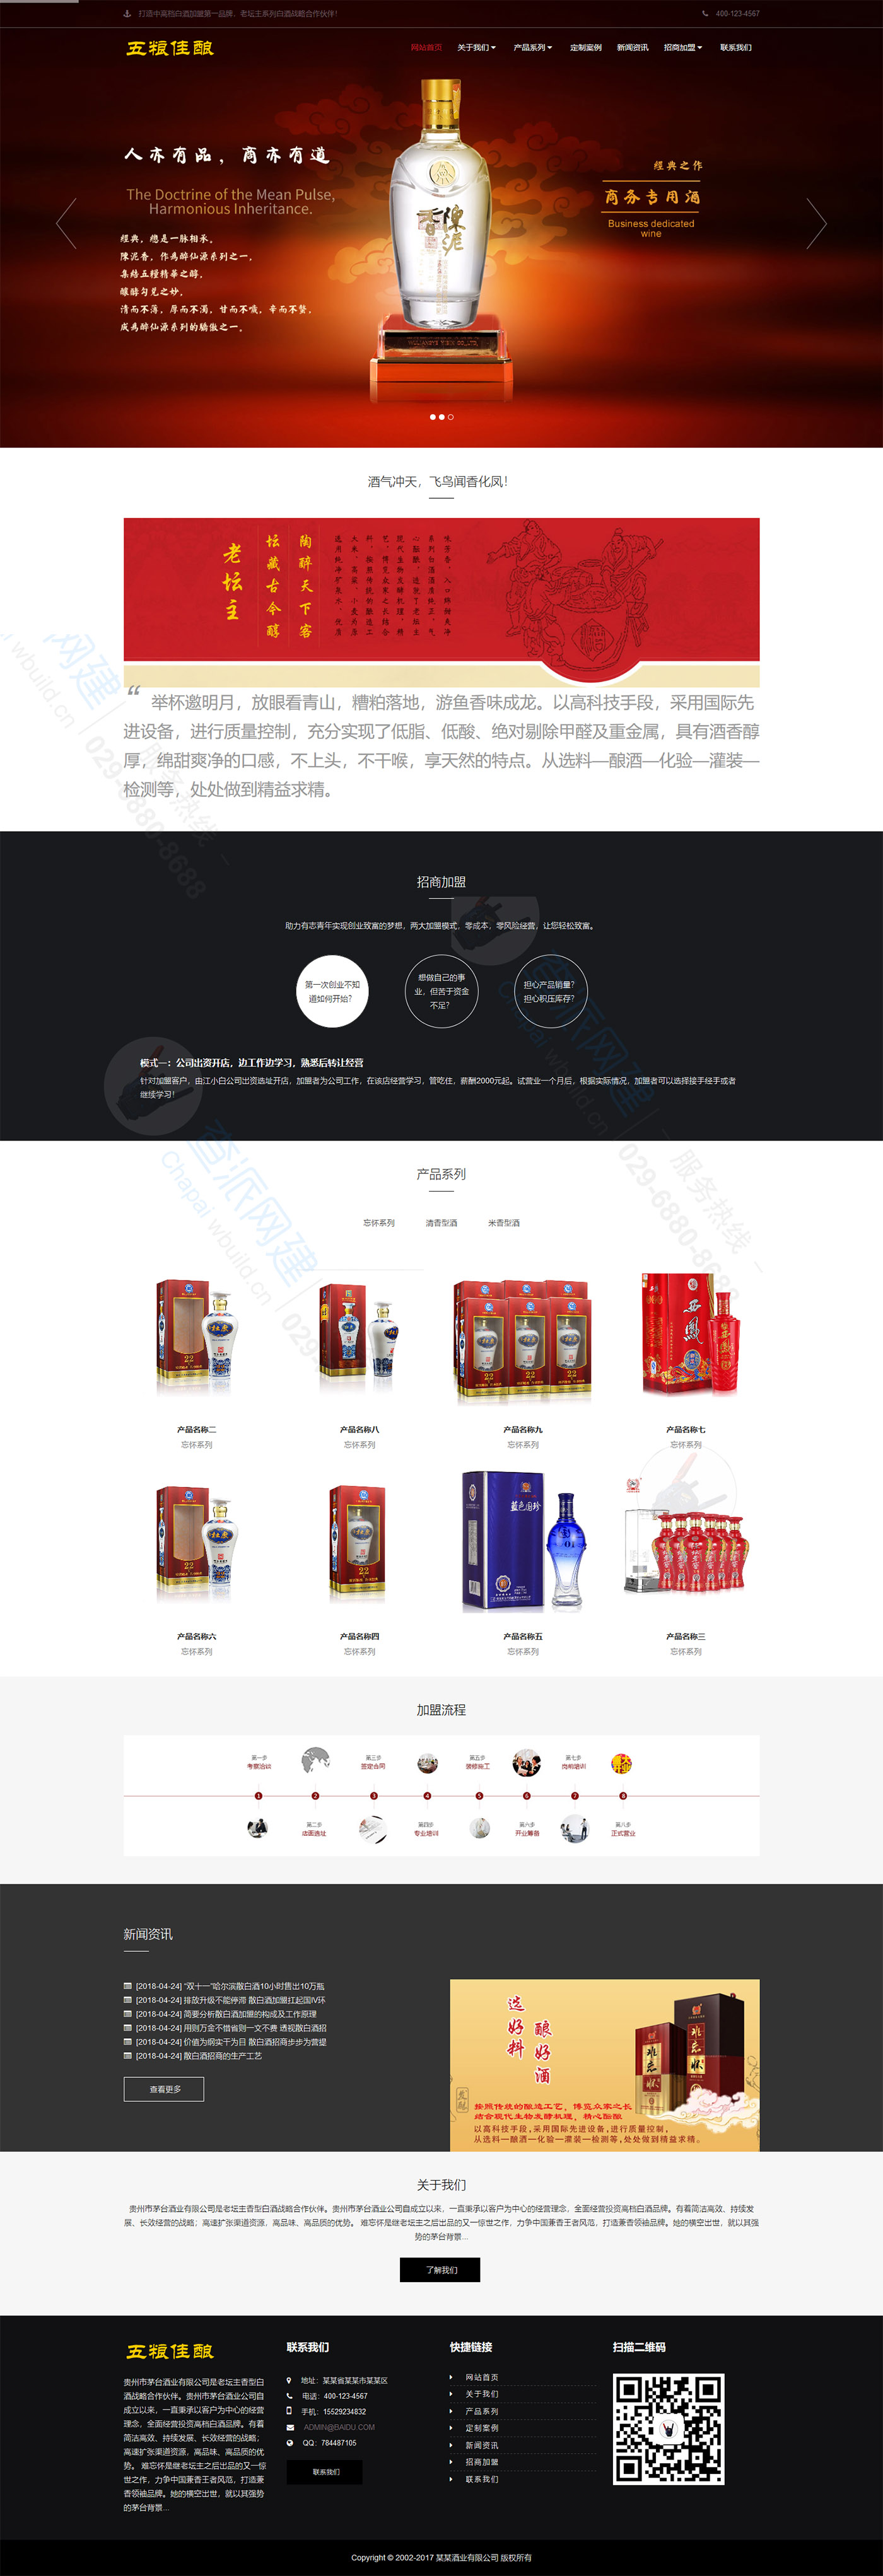 高端酒业包装设计类响应式企业网站建设模板(自适应手机端)